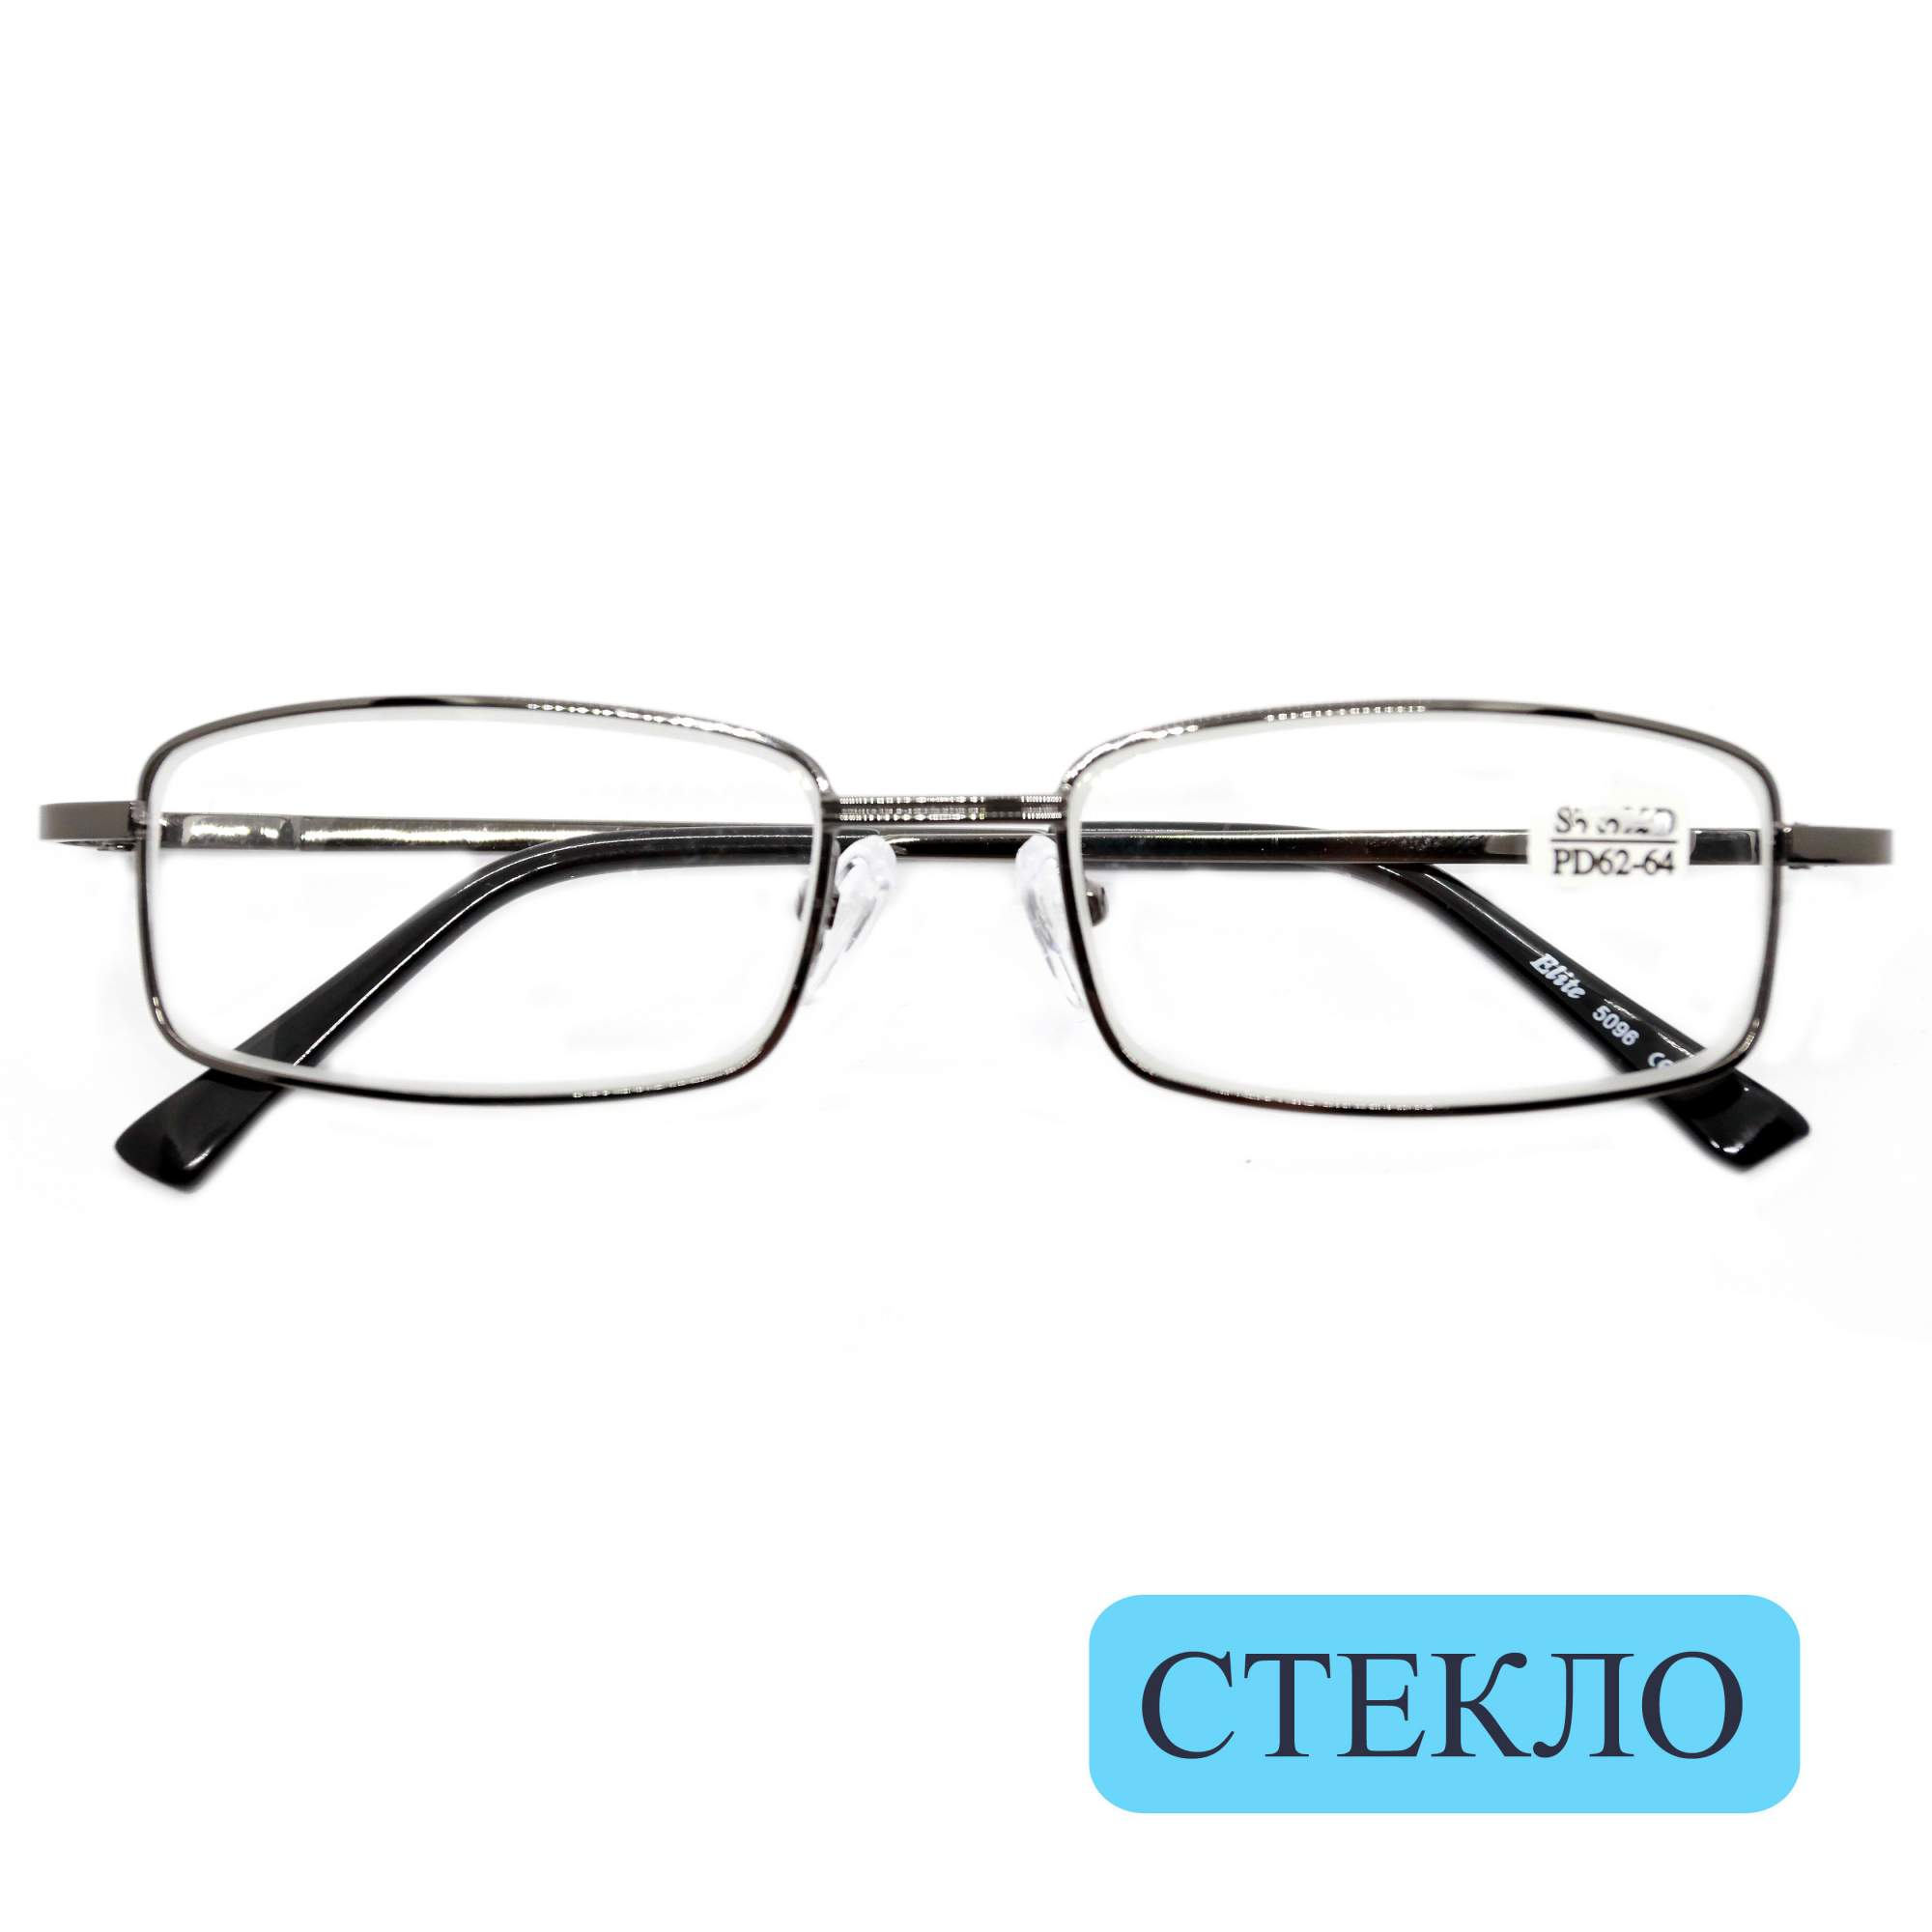 Готовые очки ELITE 5096, линза стекло, +5.50, c футляром, цвет серый металлик, РЦ 62-64 - купить в интернет-магазинах, цены на Мегамаркет | корригирующие очки EL-5096-550-GRY